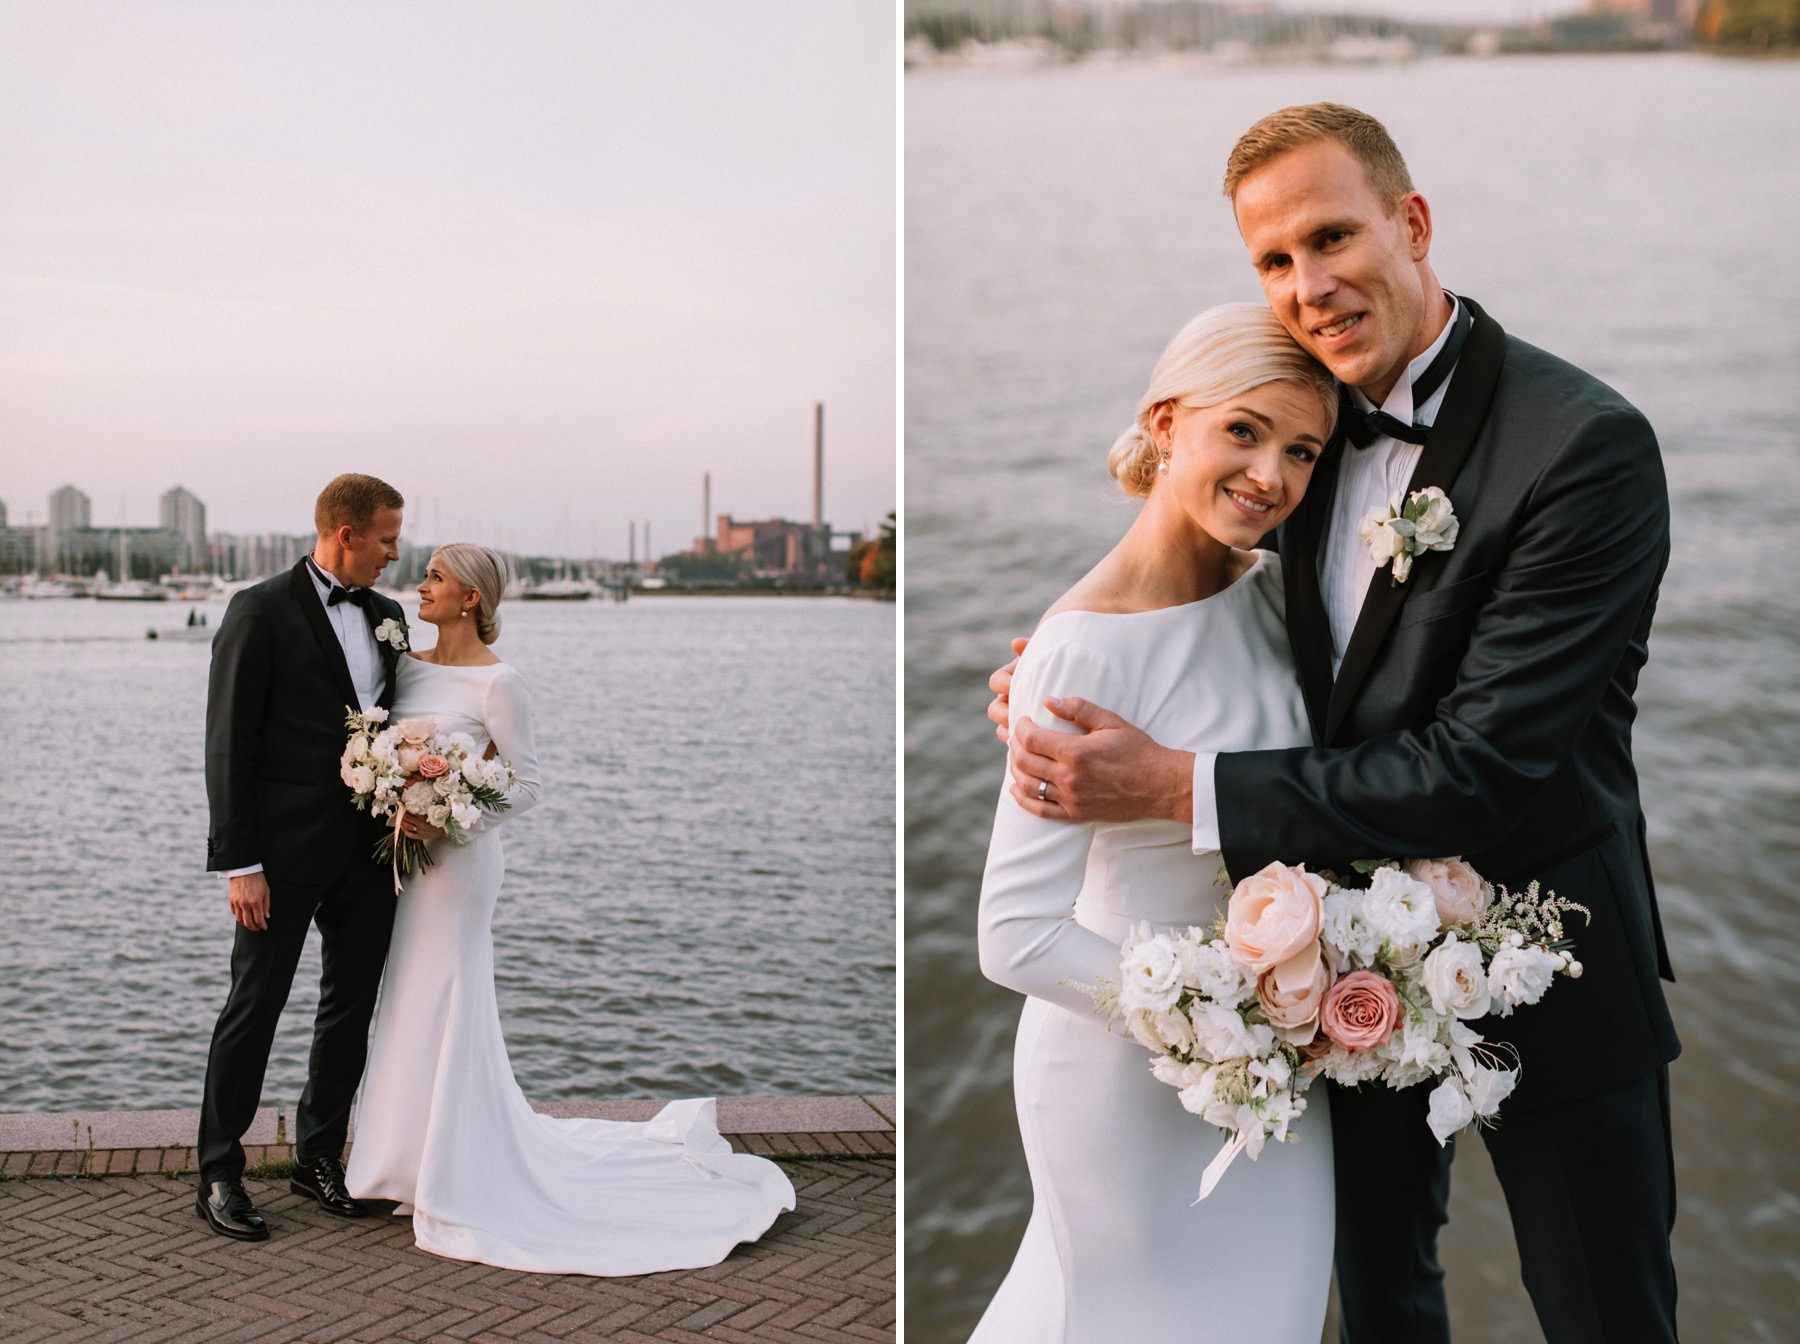 Helsinki wedding photographer Maria Hedengren